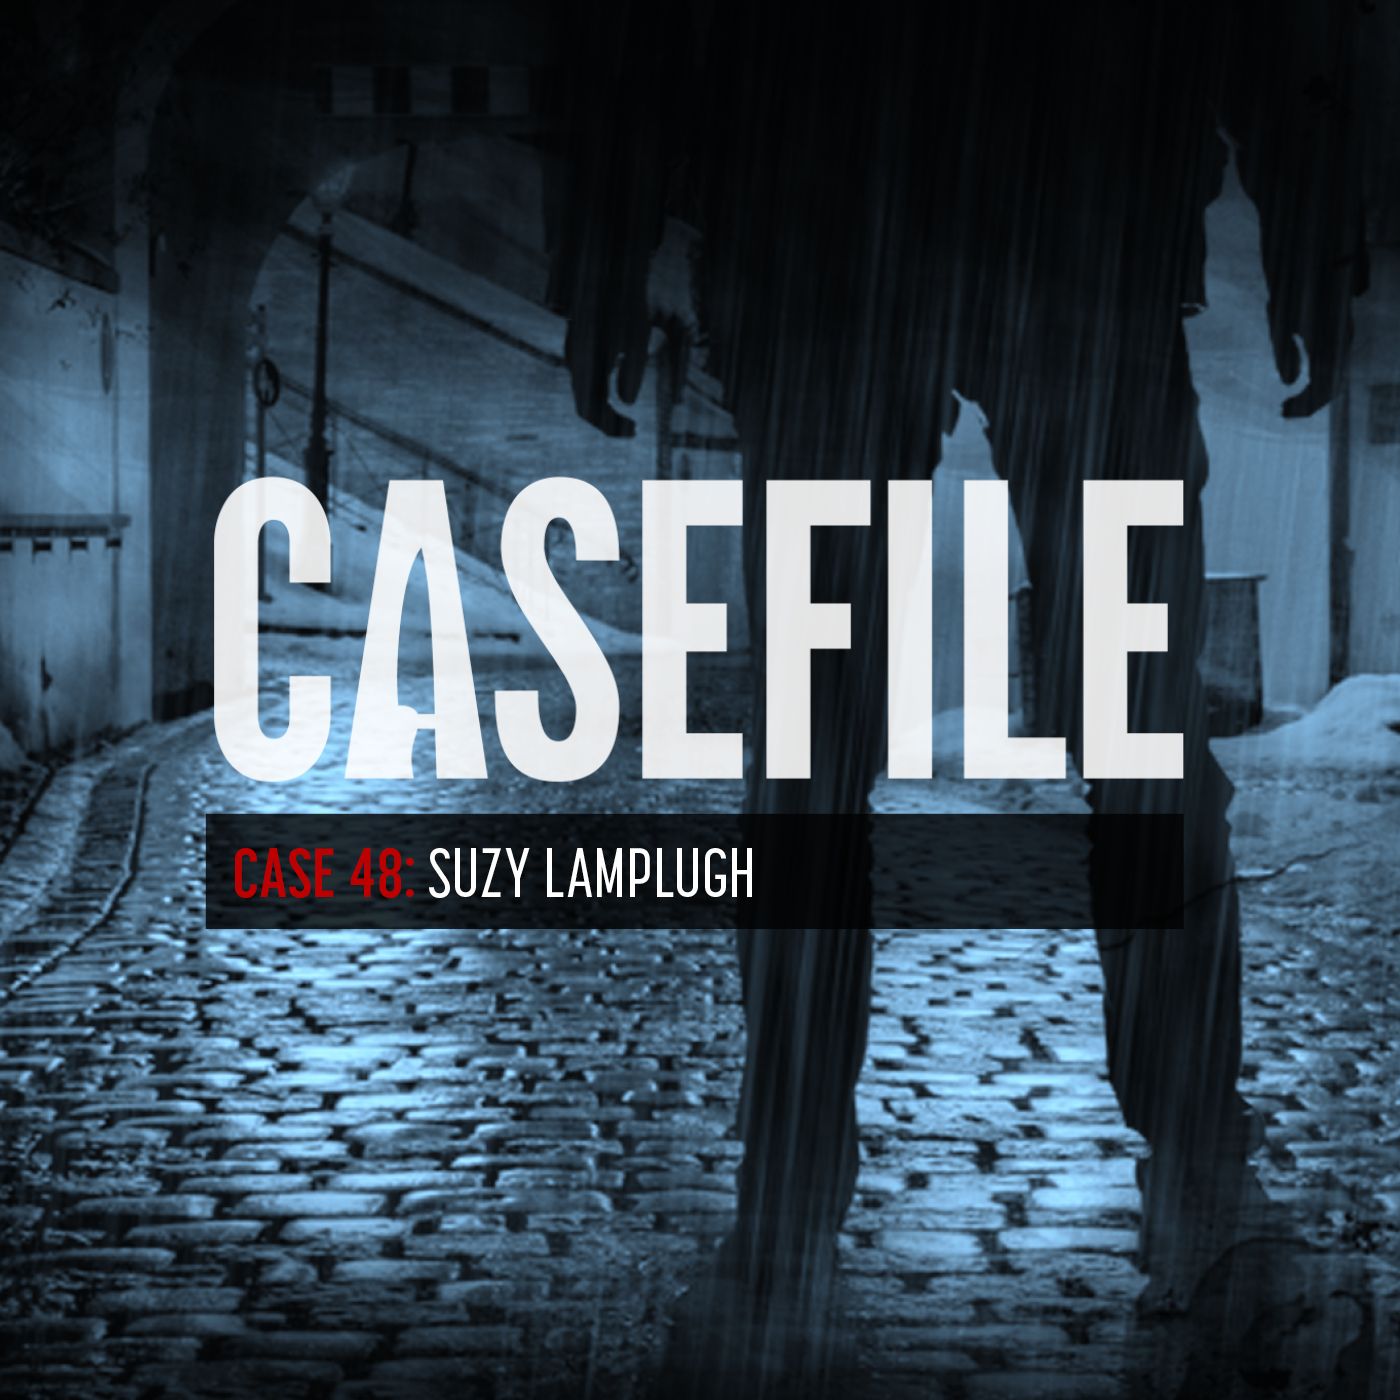 Case 48: Suzy Lamplugh